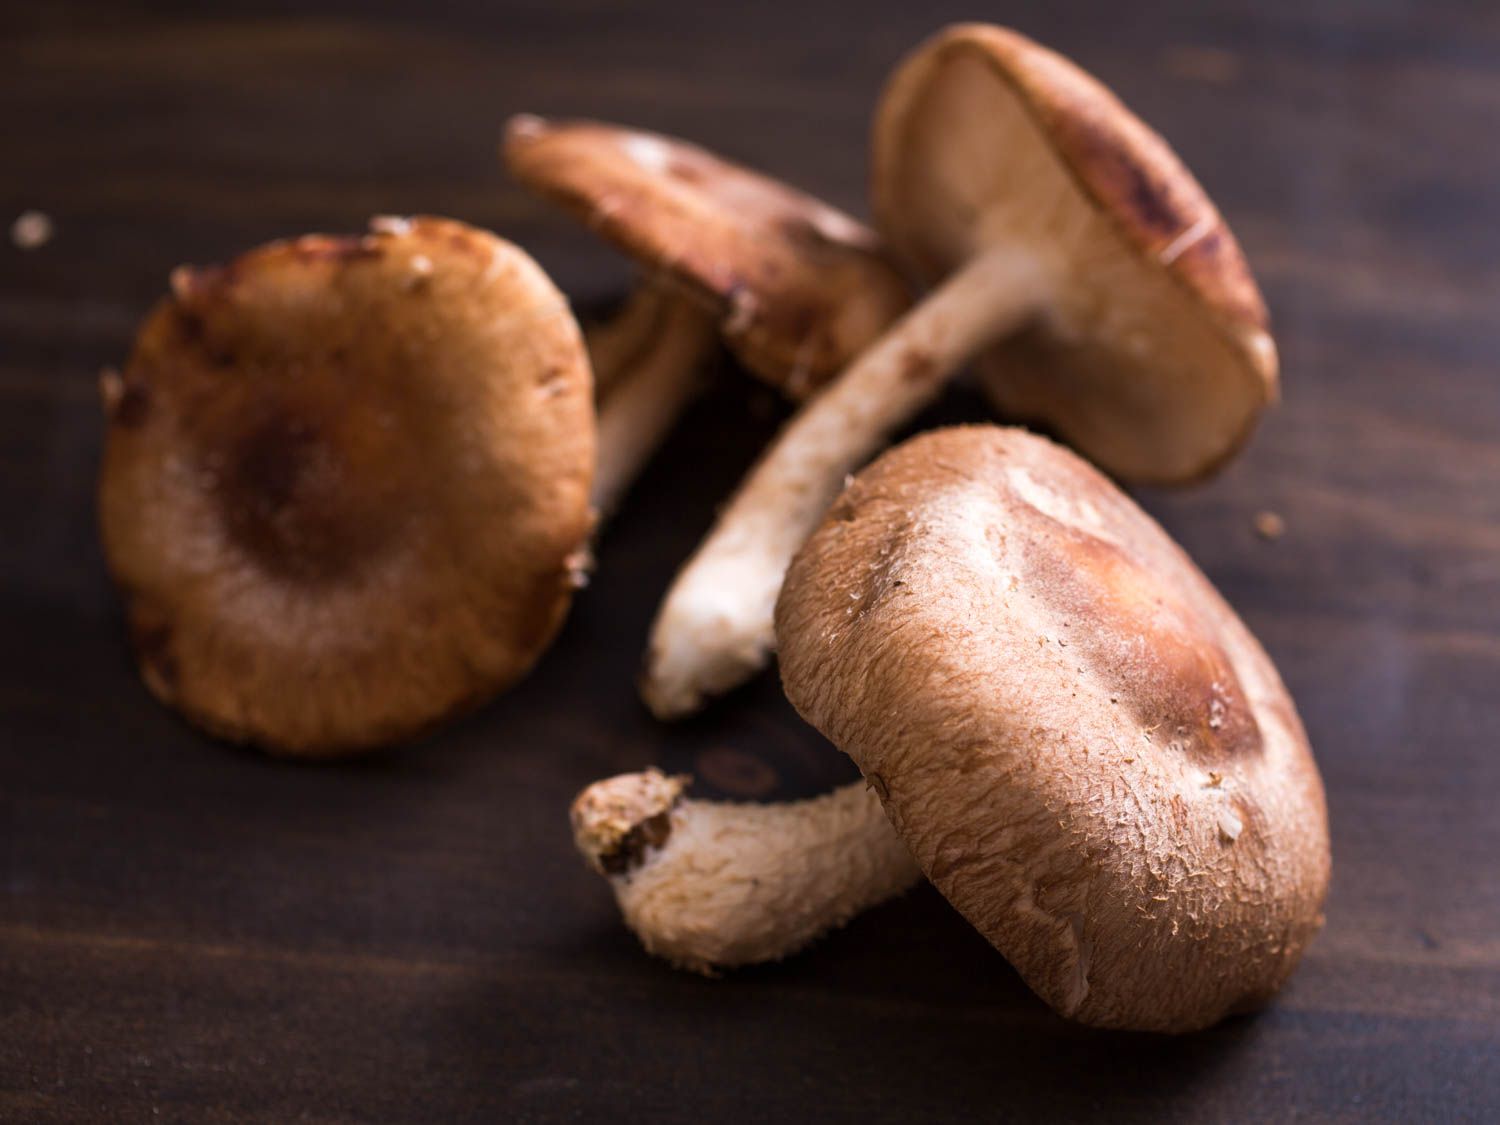 20150527——蘑菇,香菇,指导-维姬-沃斯克- 1. - jpg